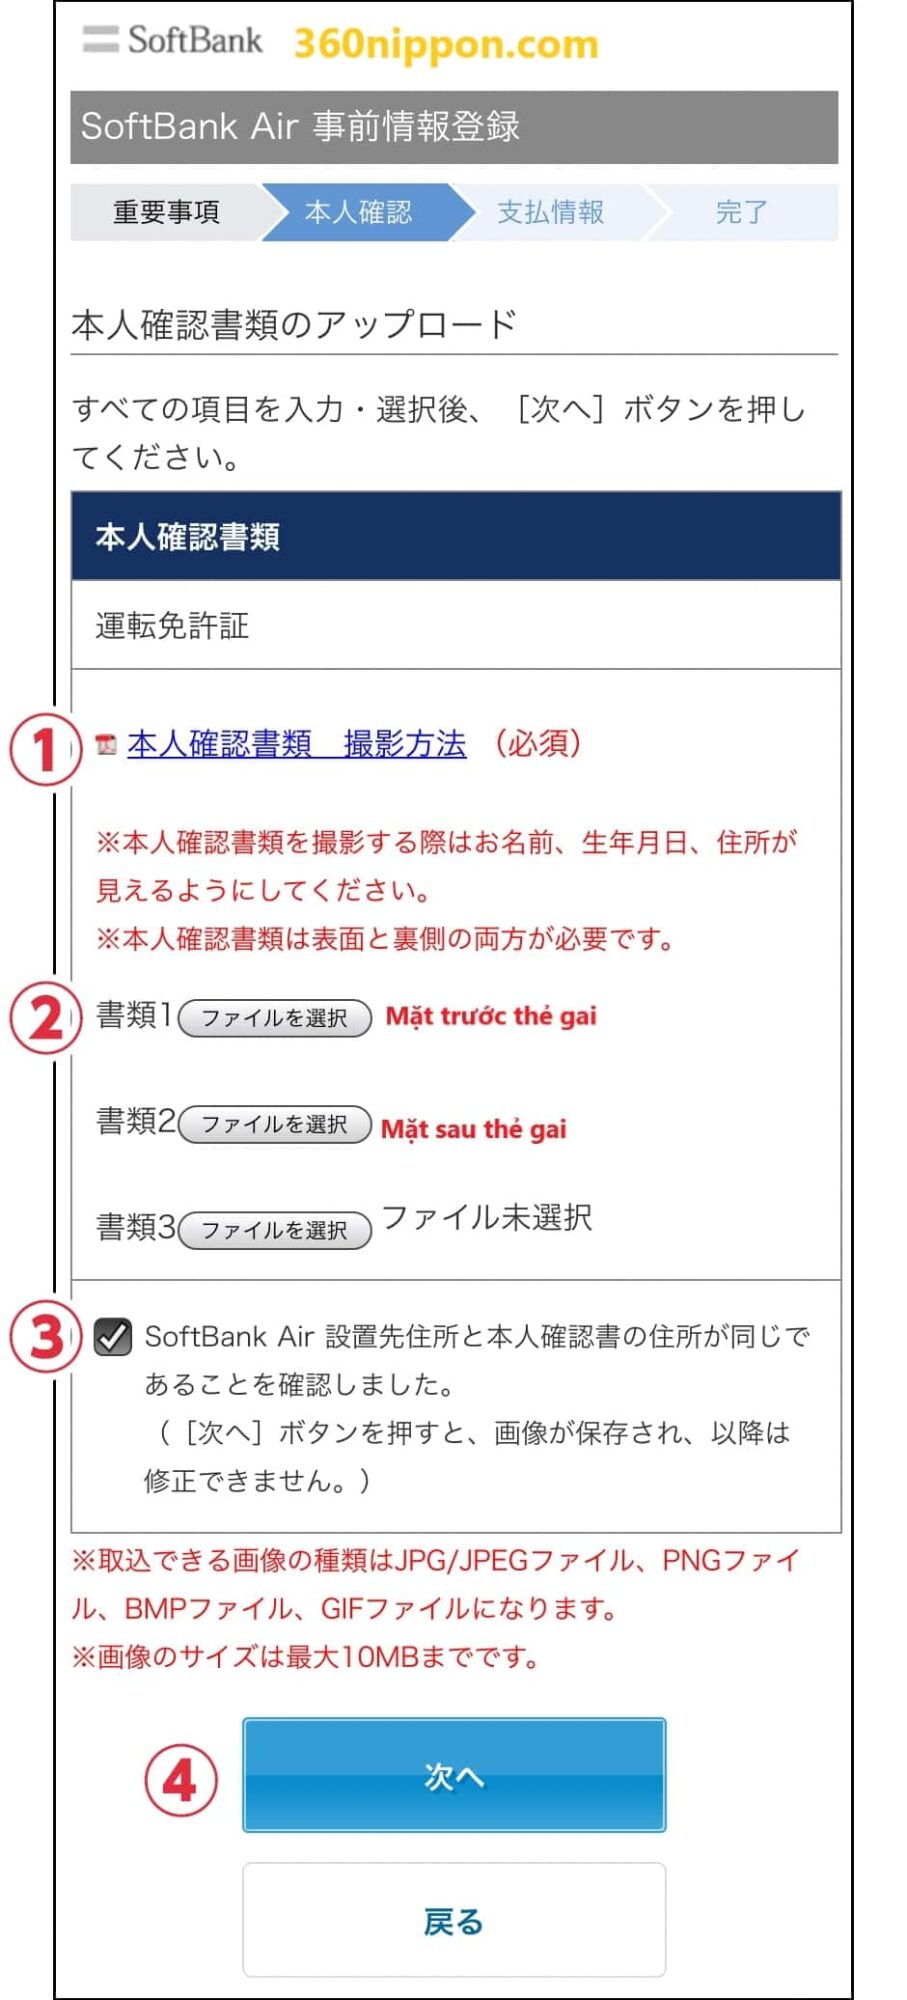 Hướng dẫn đăng ký wifi cố định softbank ở Nhật 66